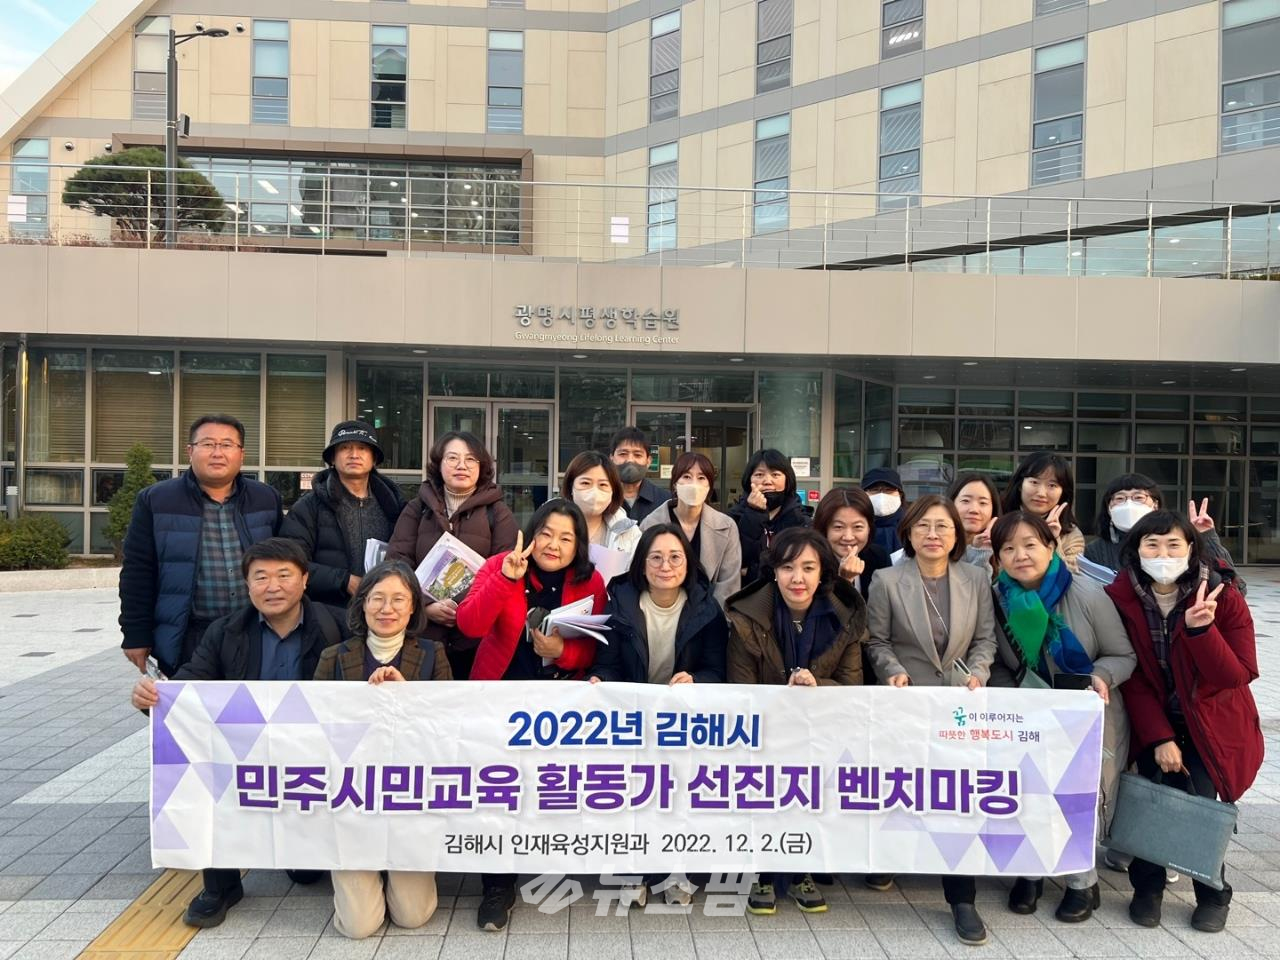 @광명시 평생학습을 배우기 위한 벤치마킹이 이어지고 있다-12월 2일 김해시 평생학습 관계자 방문